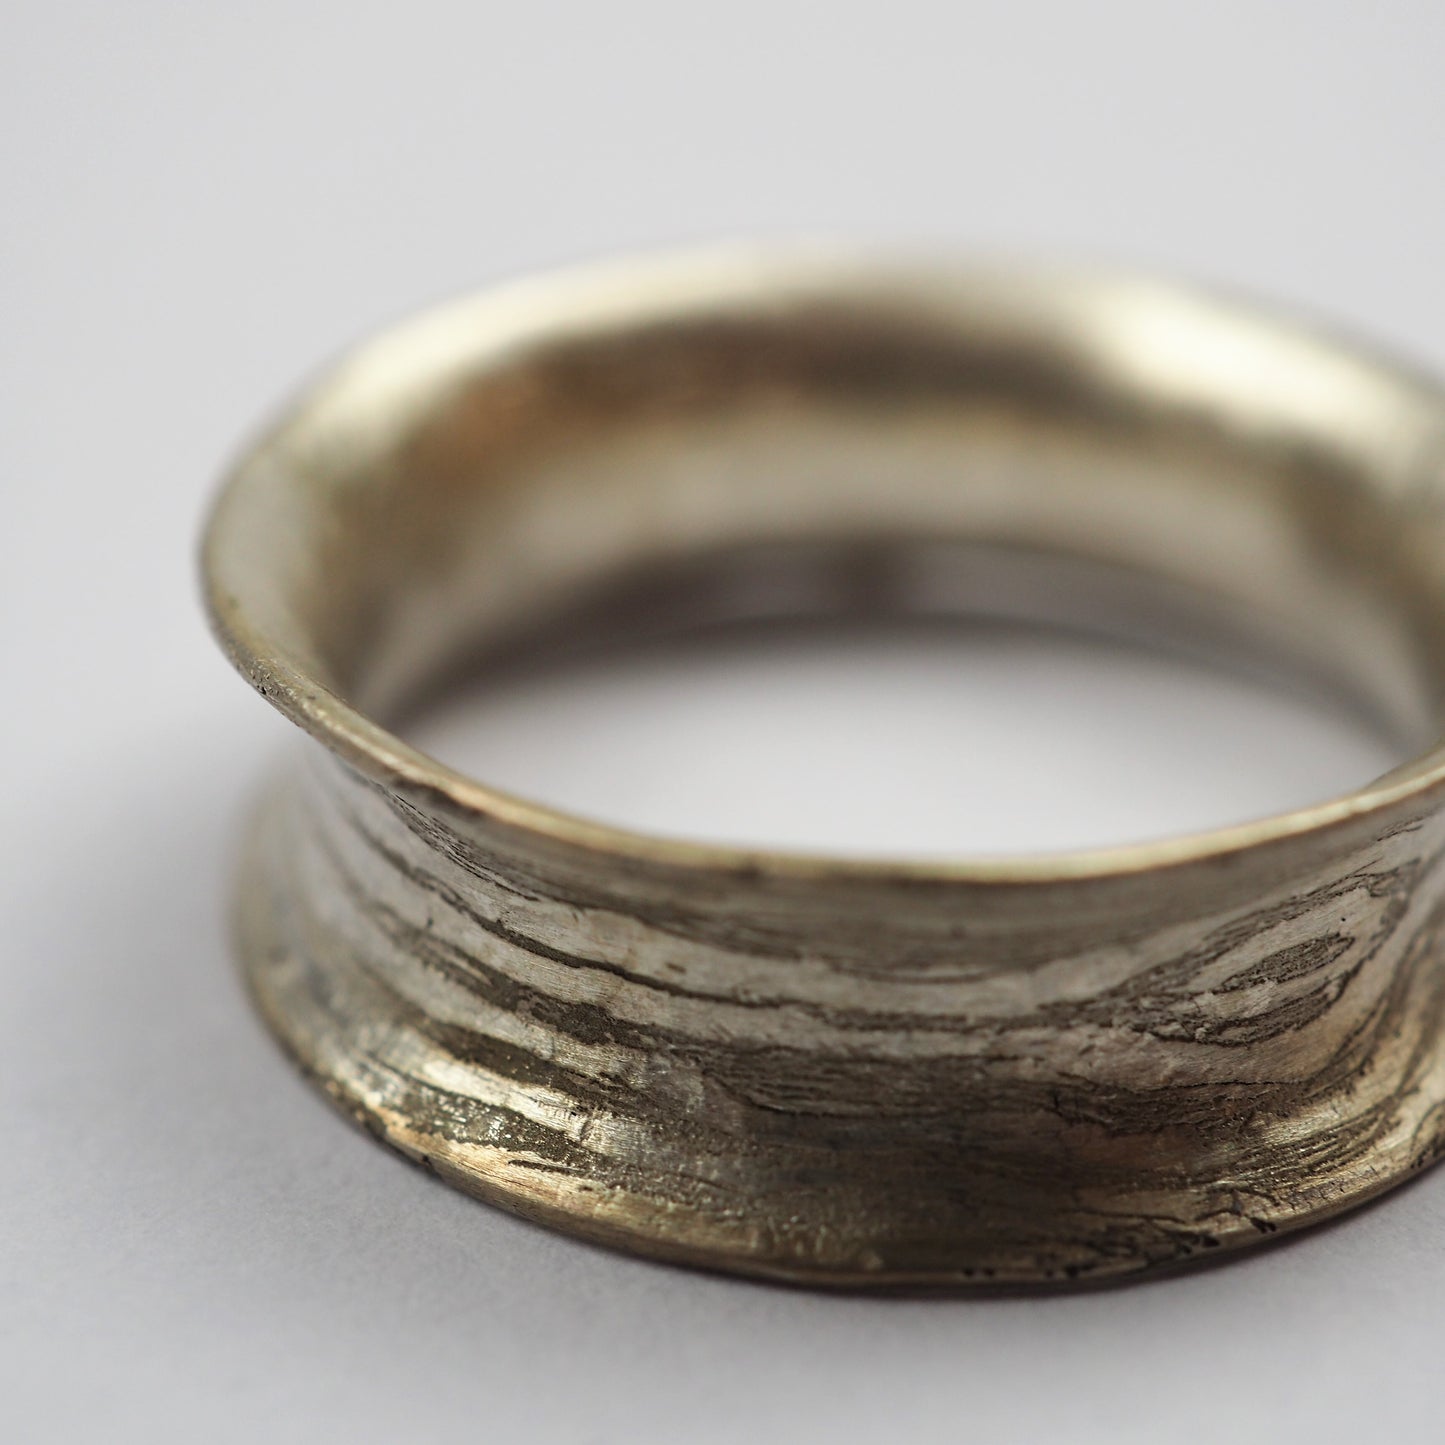 Ilett, Rebecca - Small Silver Ring